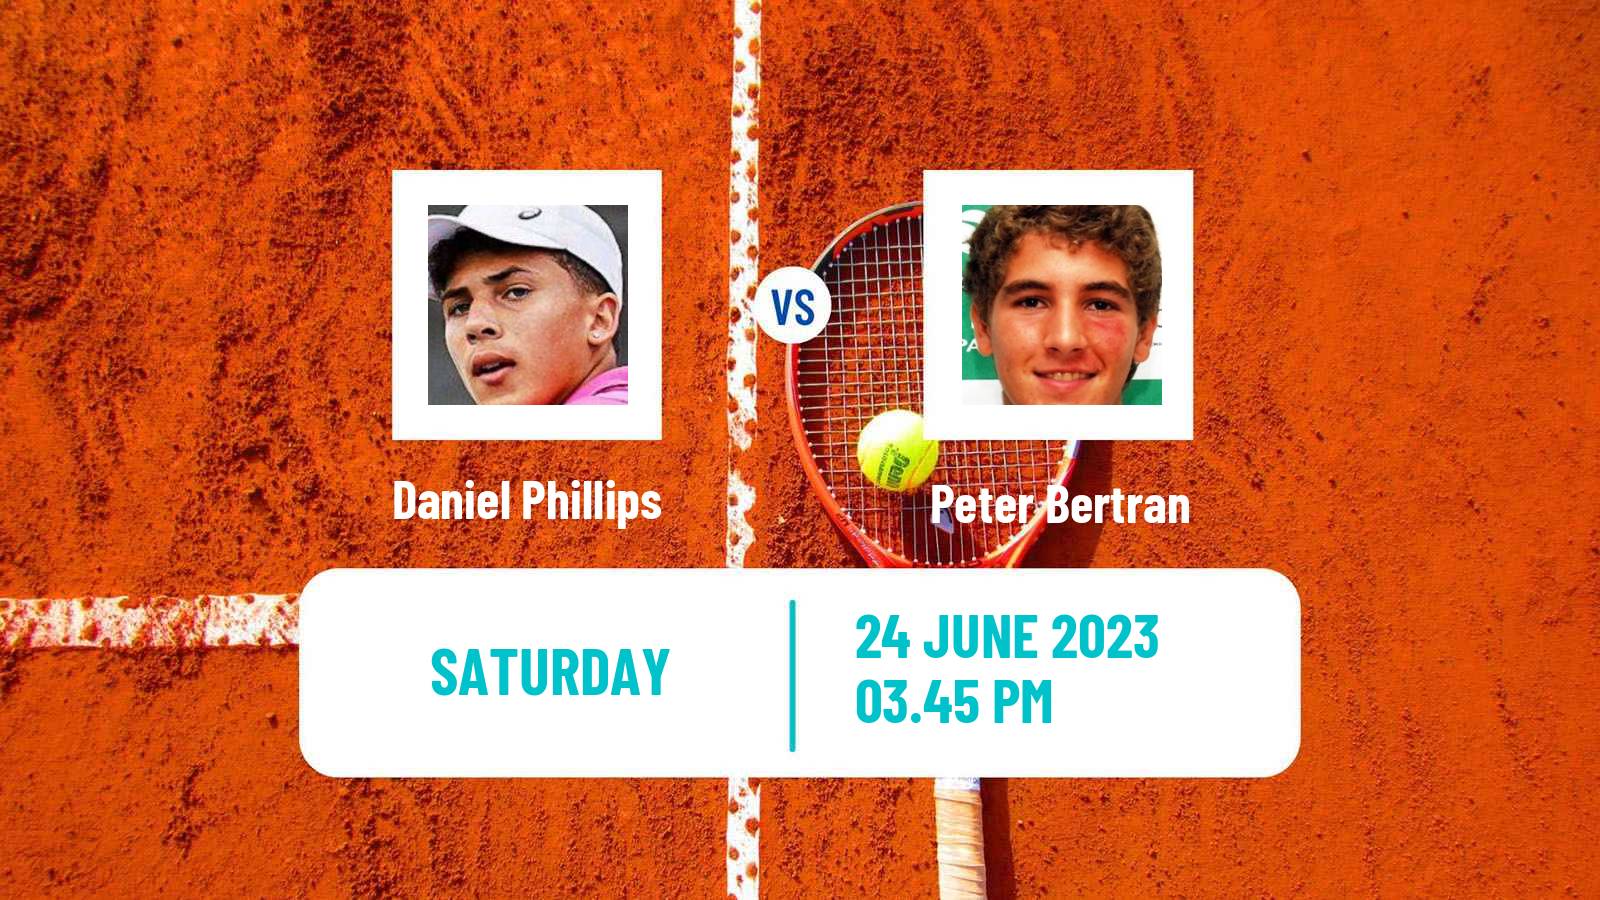 Tennis Davis Cup Group III Daniel Phillips - Peter Bertran